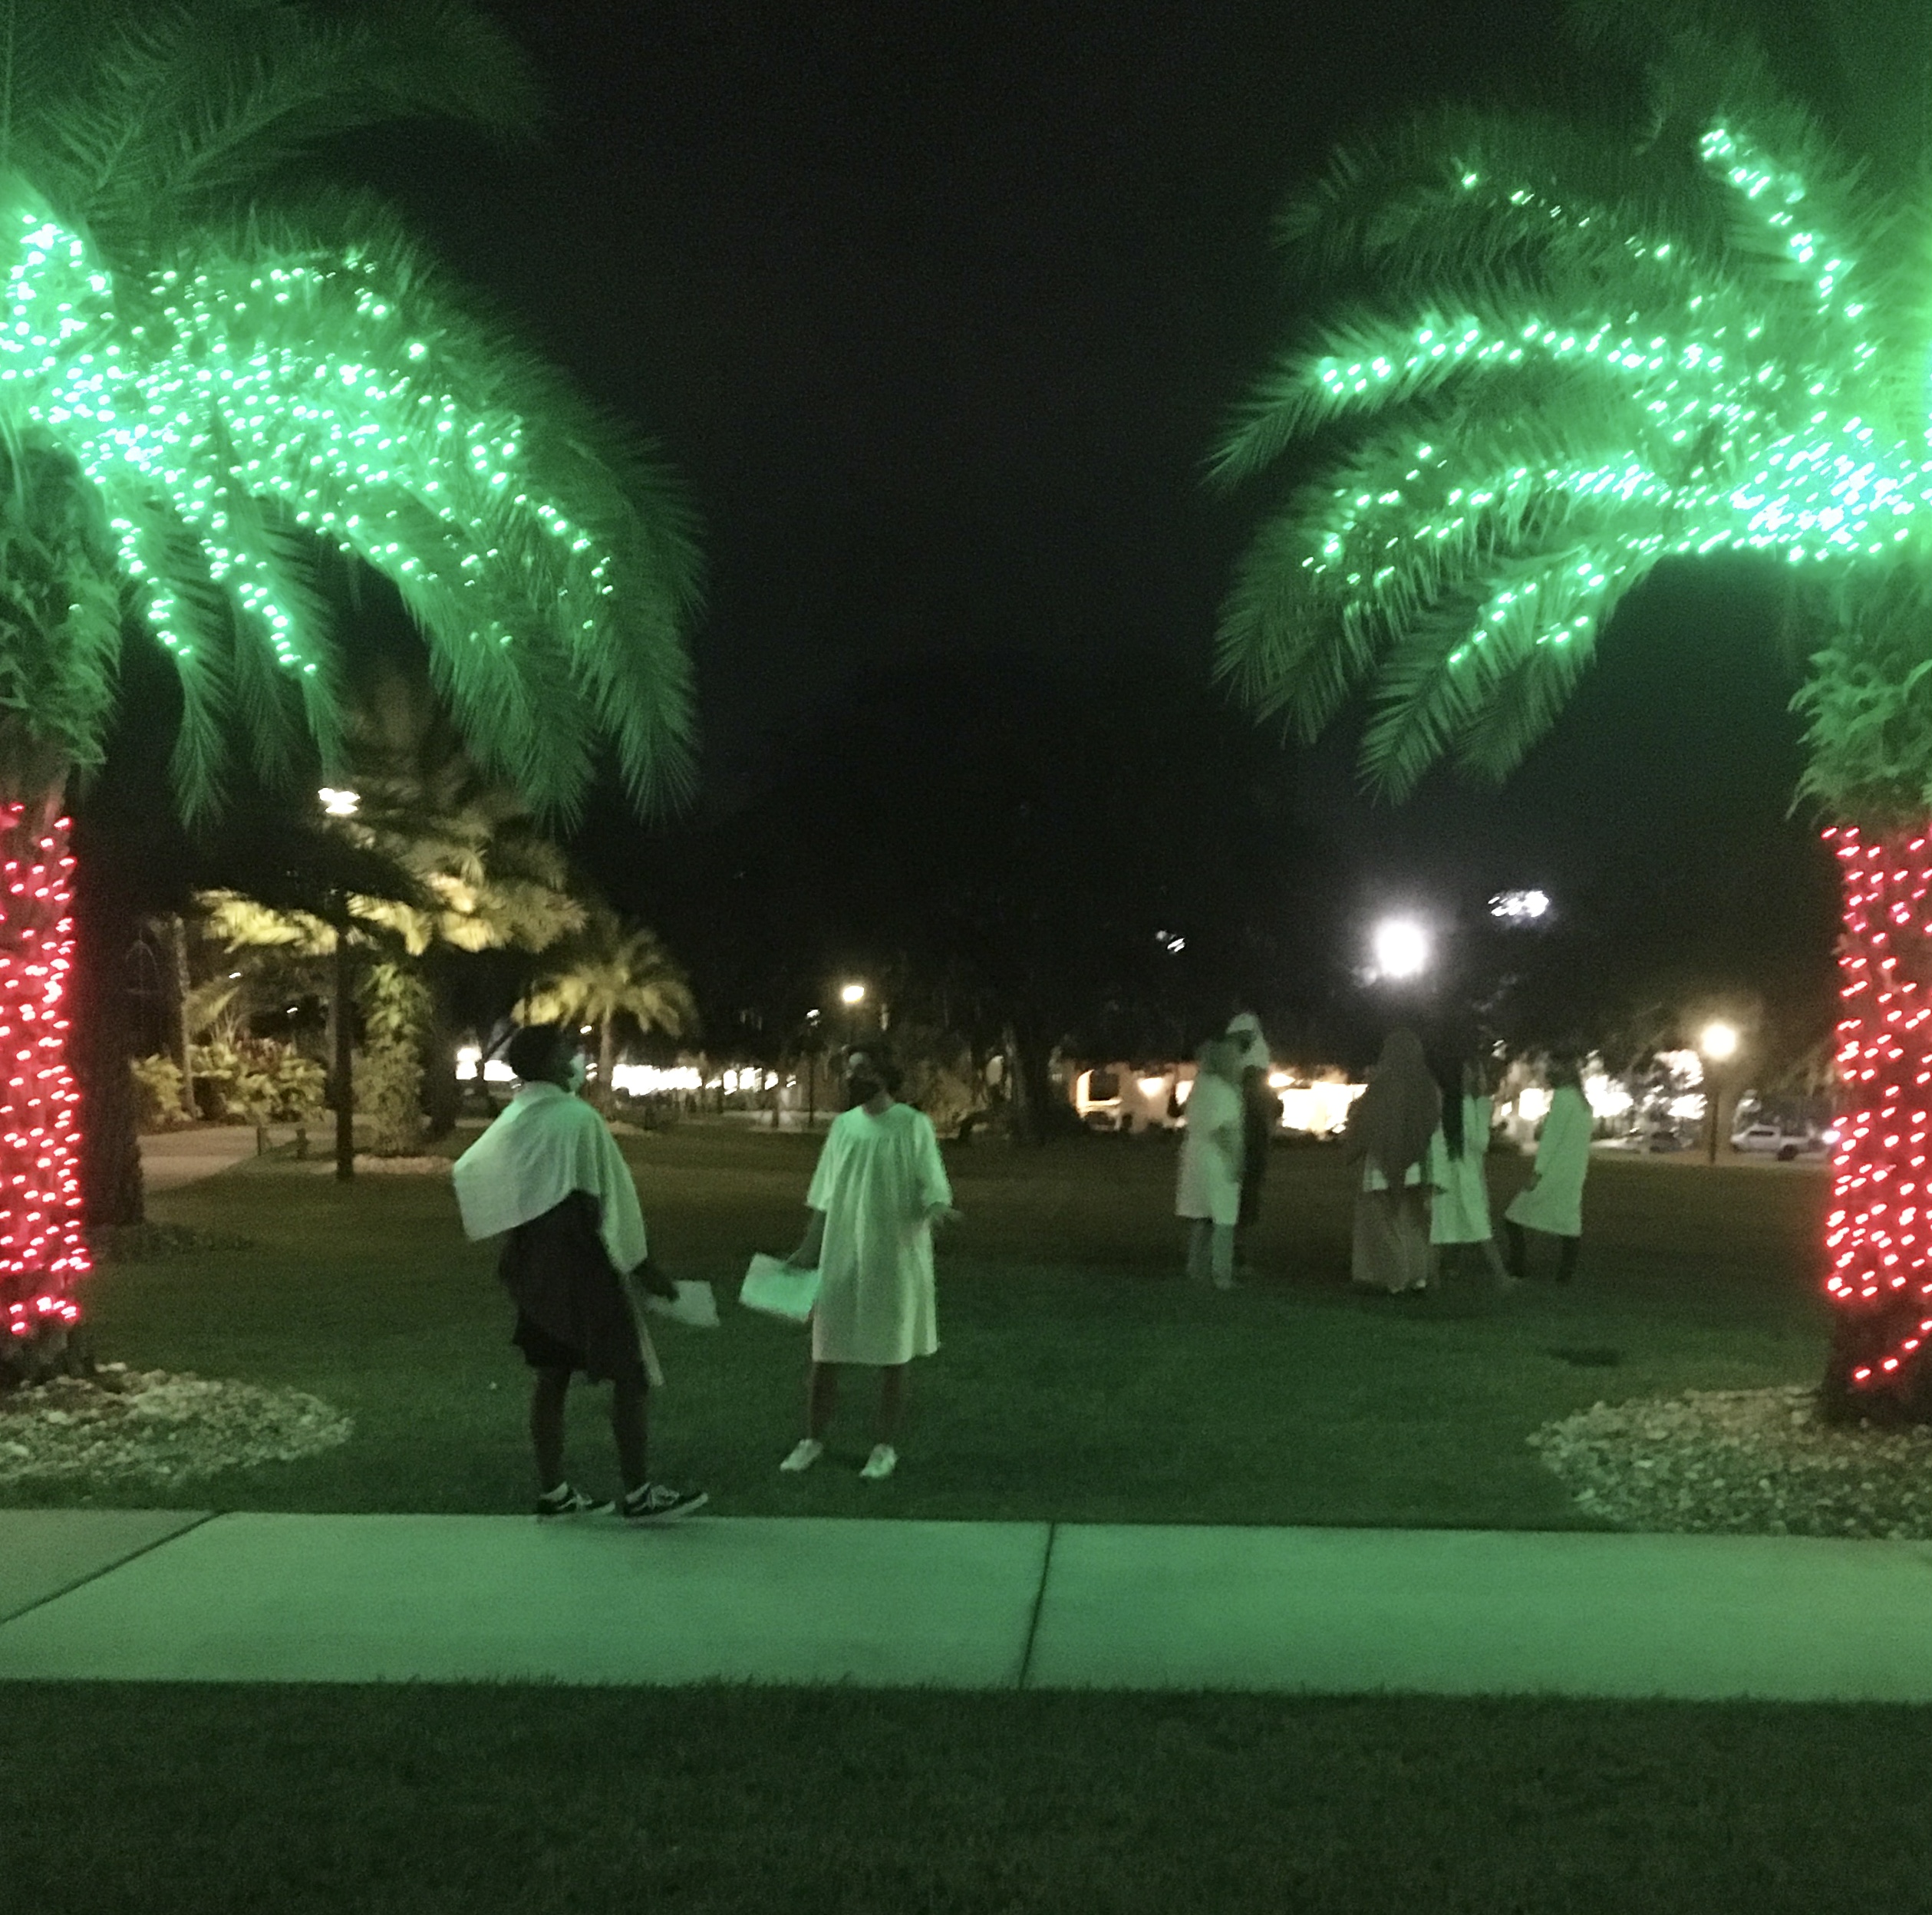 Saint Leo palm trees with Christmas lights.